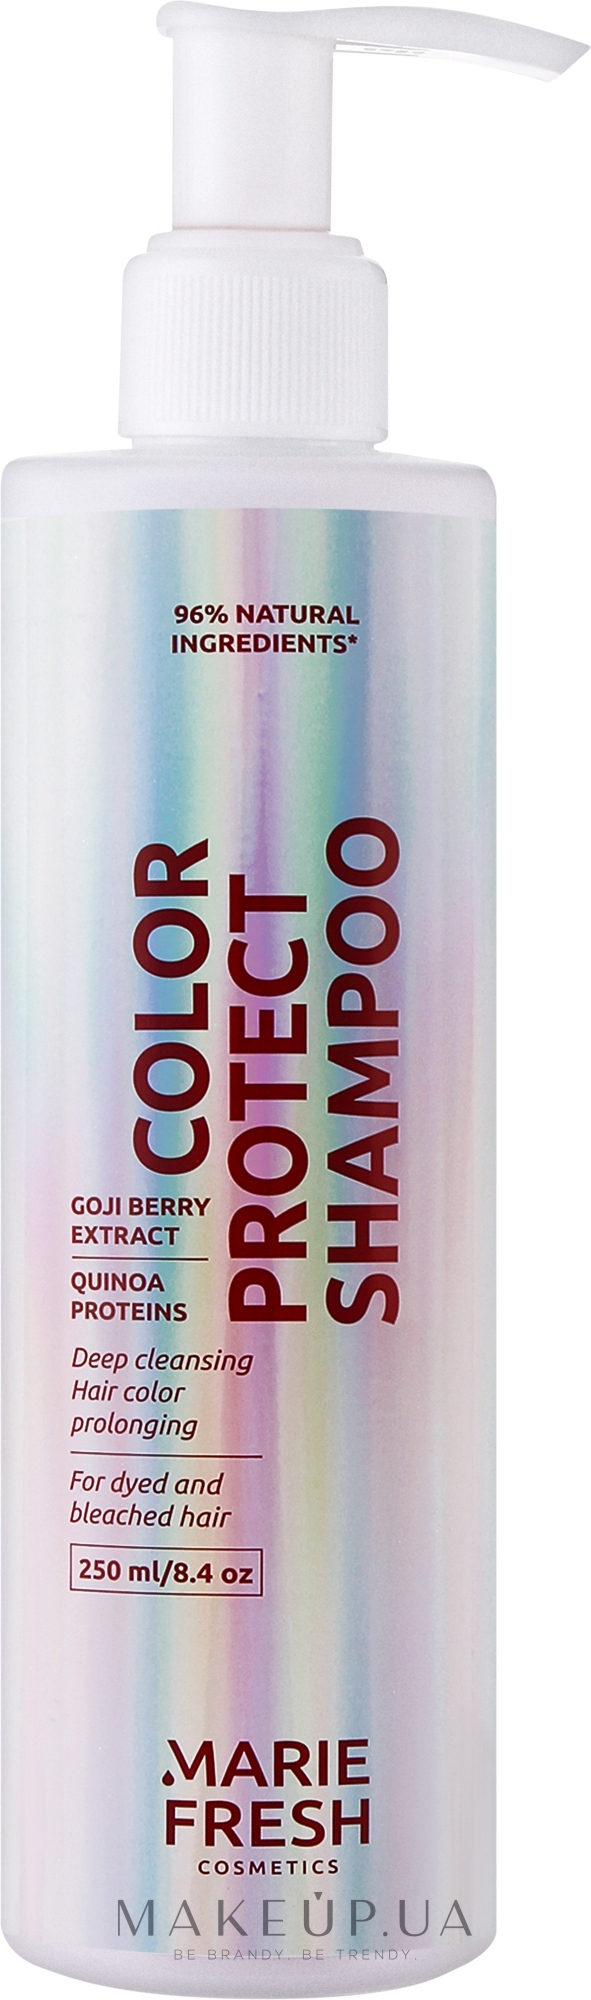 Шампунь для професійного догляду за фарбованим волоссям на основі антиоксидантів - Marie Fresh Cosmetics Color Protect Shampoo — фото 250ml